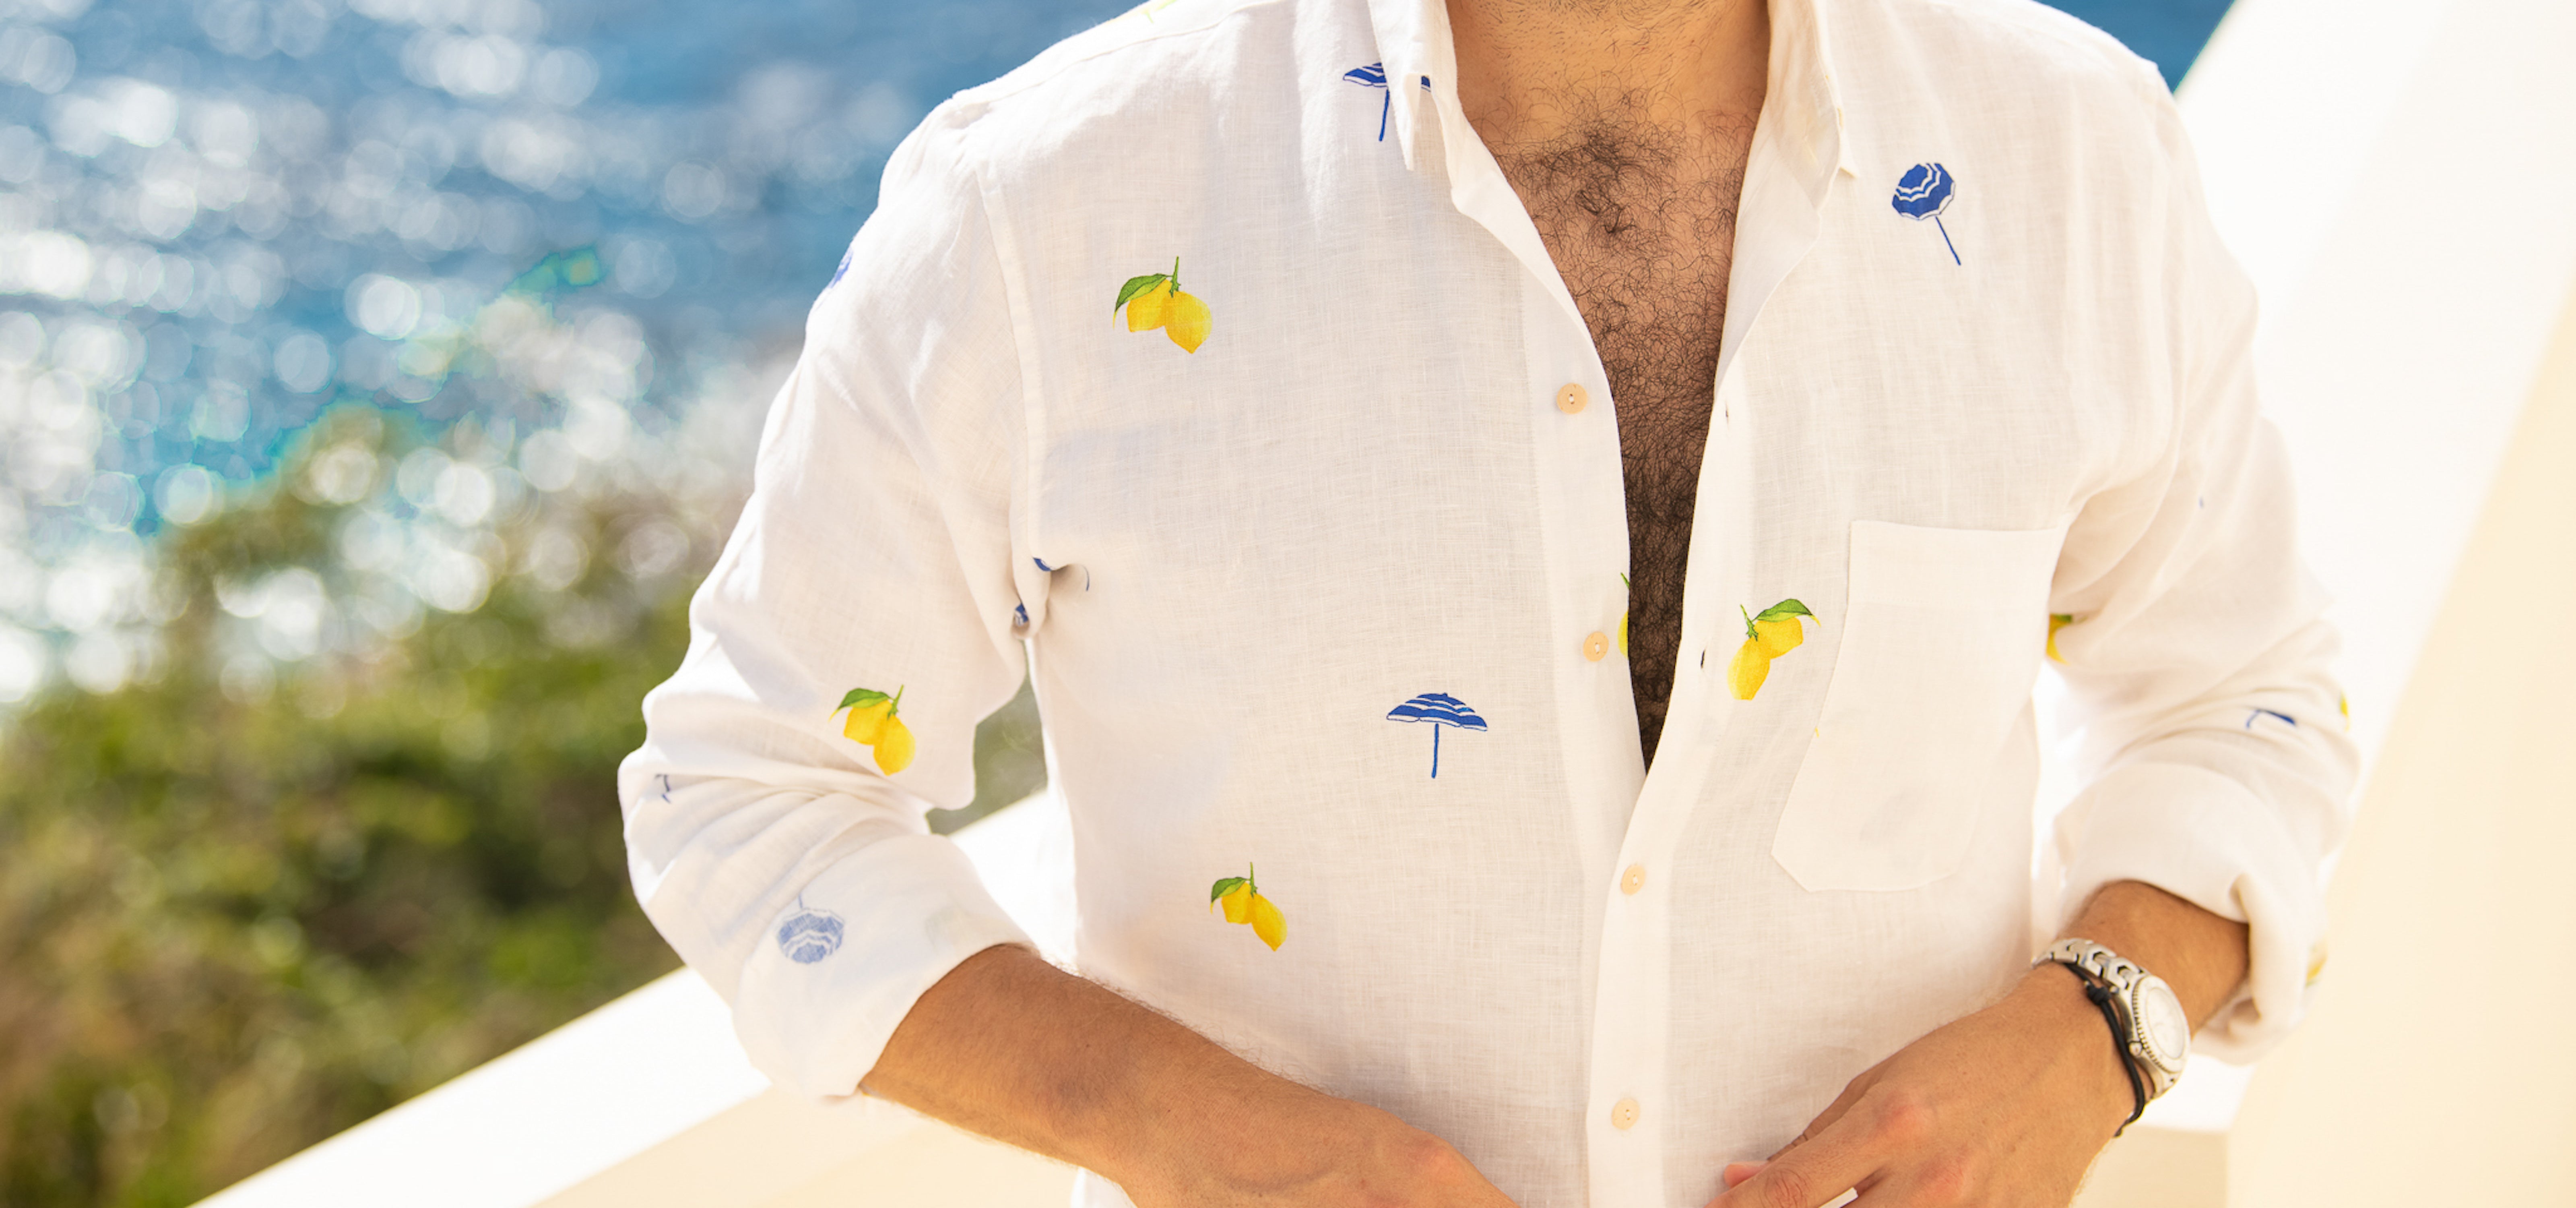 Men's 100% Hemp Linen Long Sleeve Button Down Shirt. - Vital Hemp, Inc.